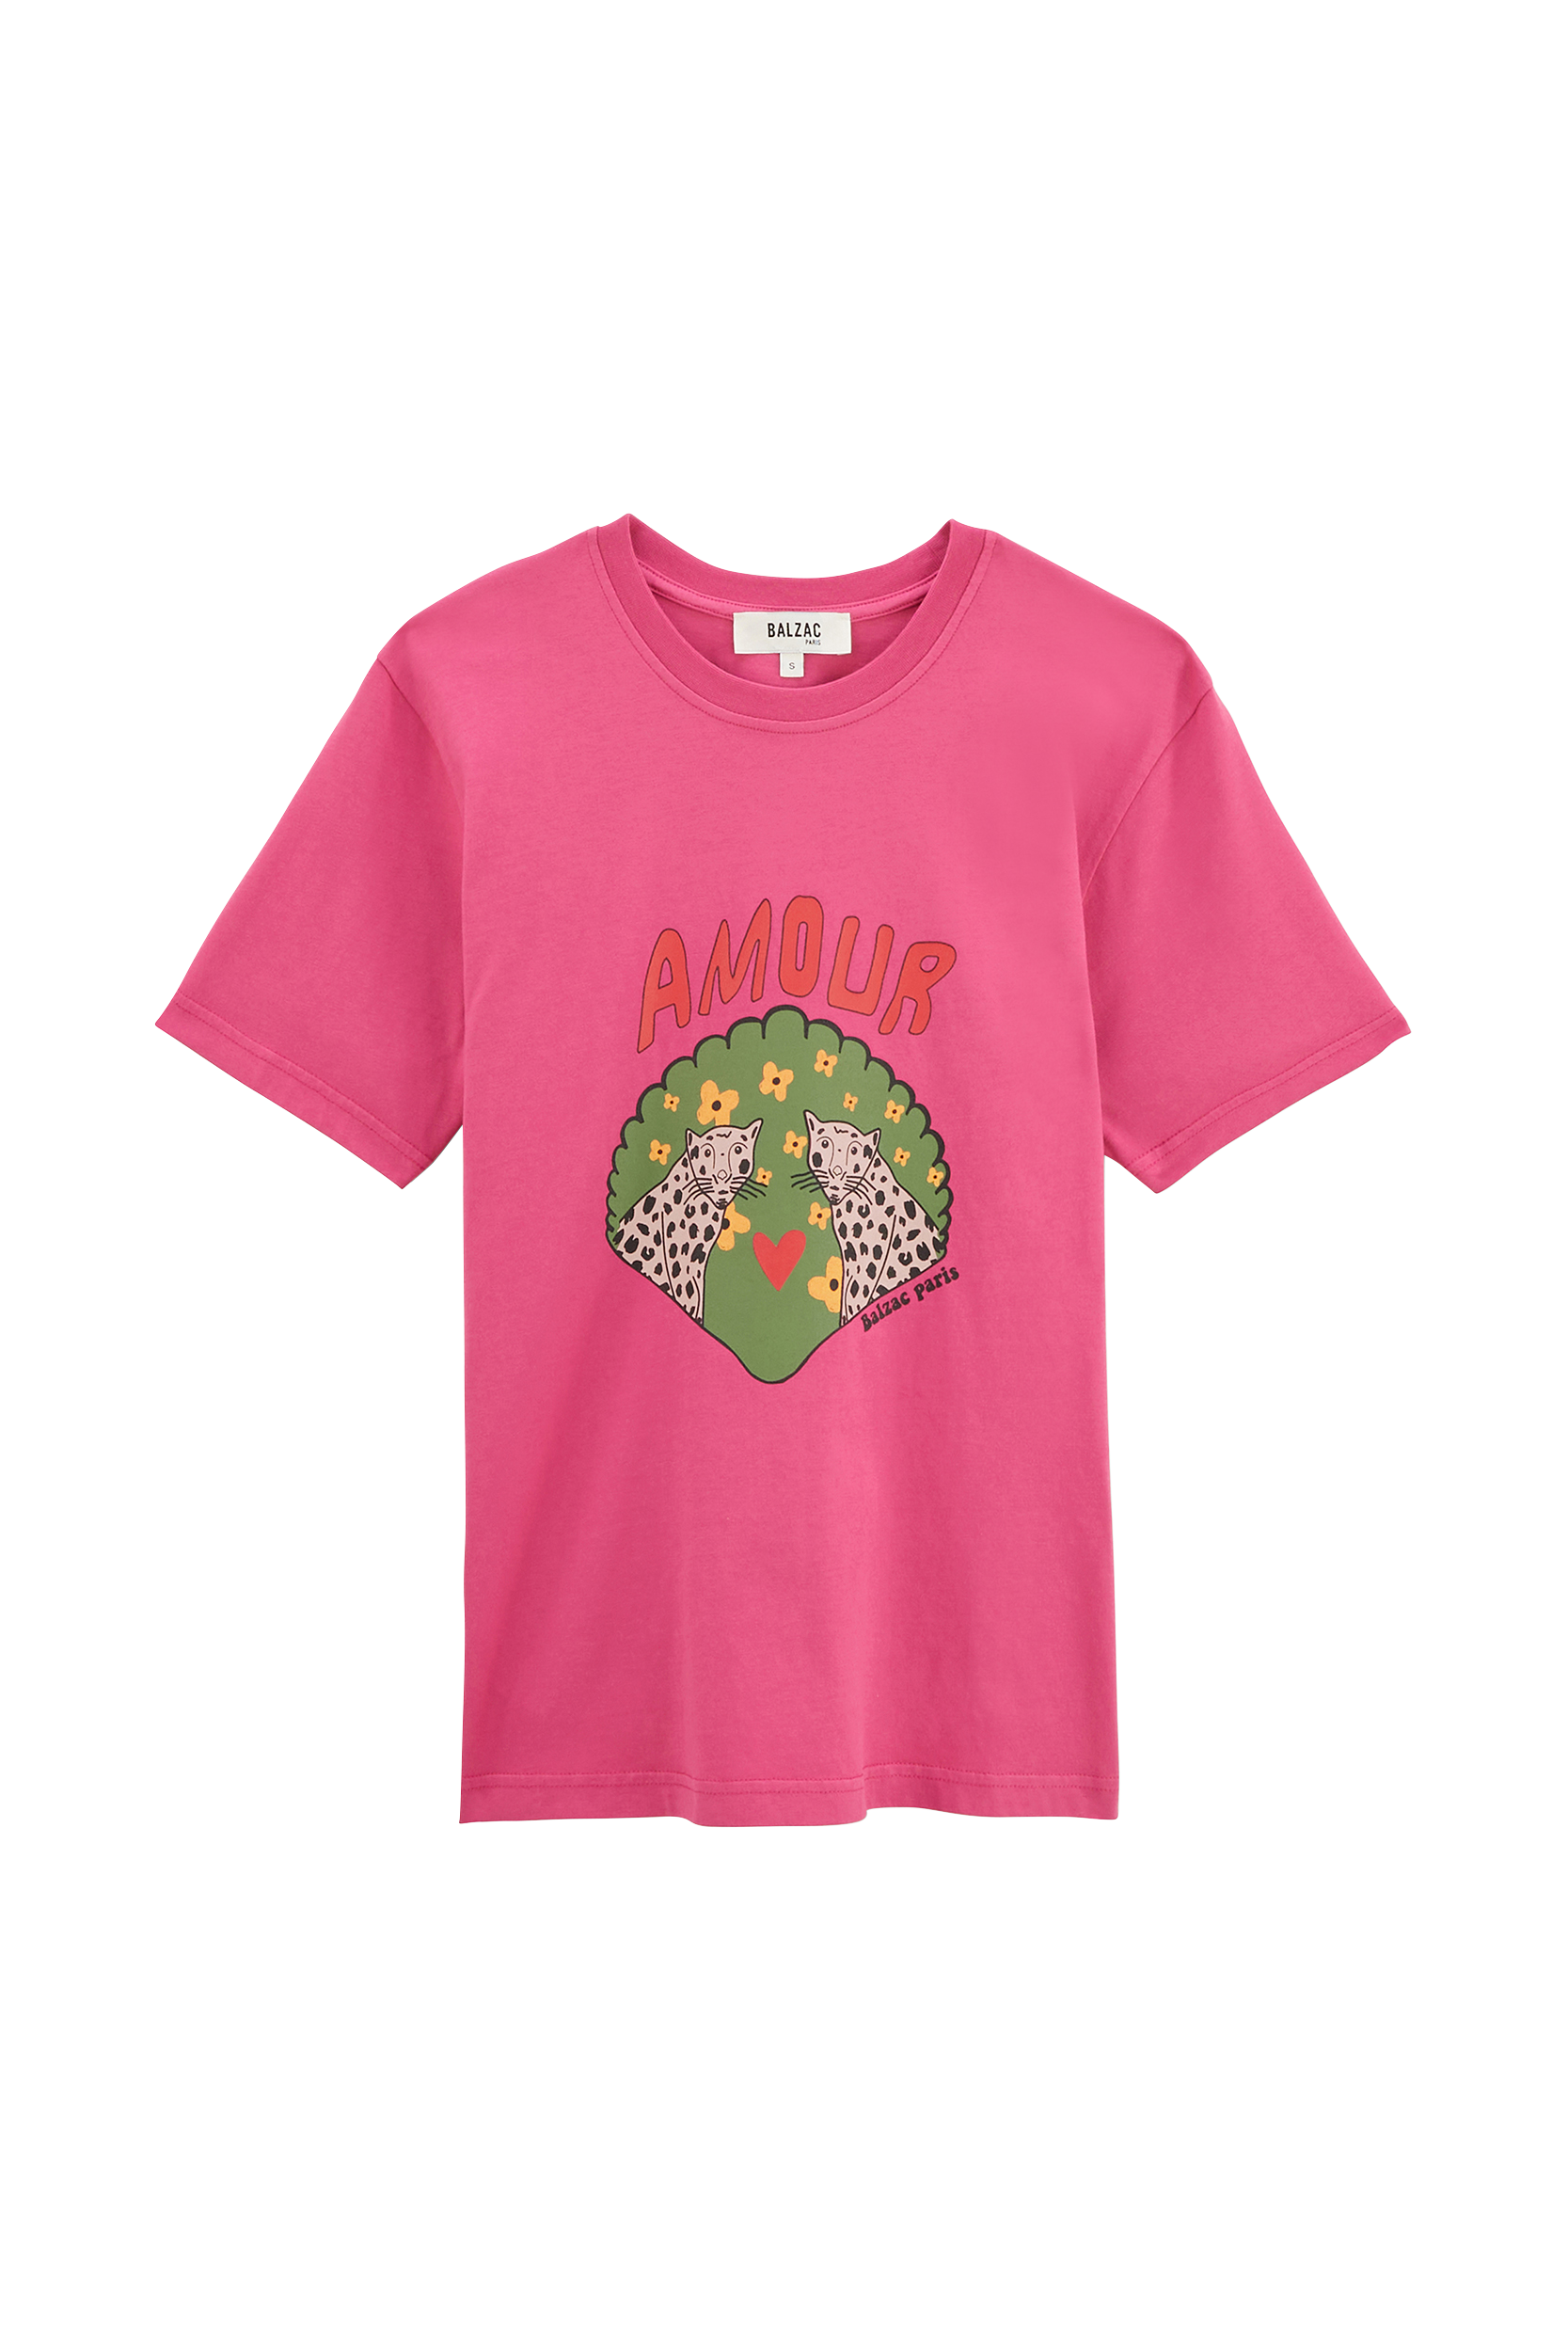 Tee-shirt Bree Amour de Léo rose